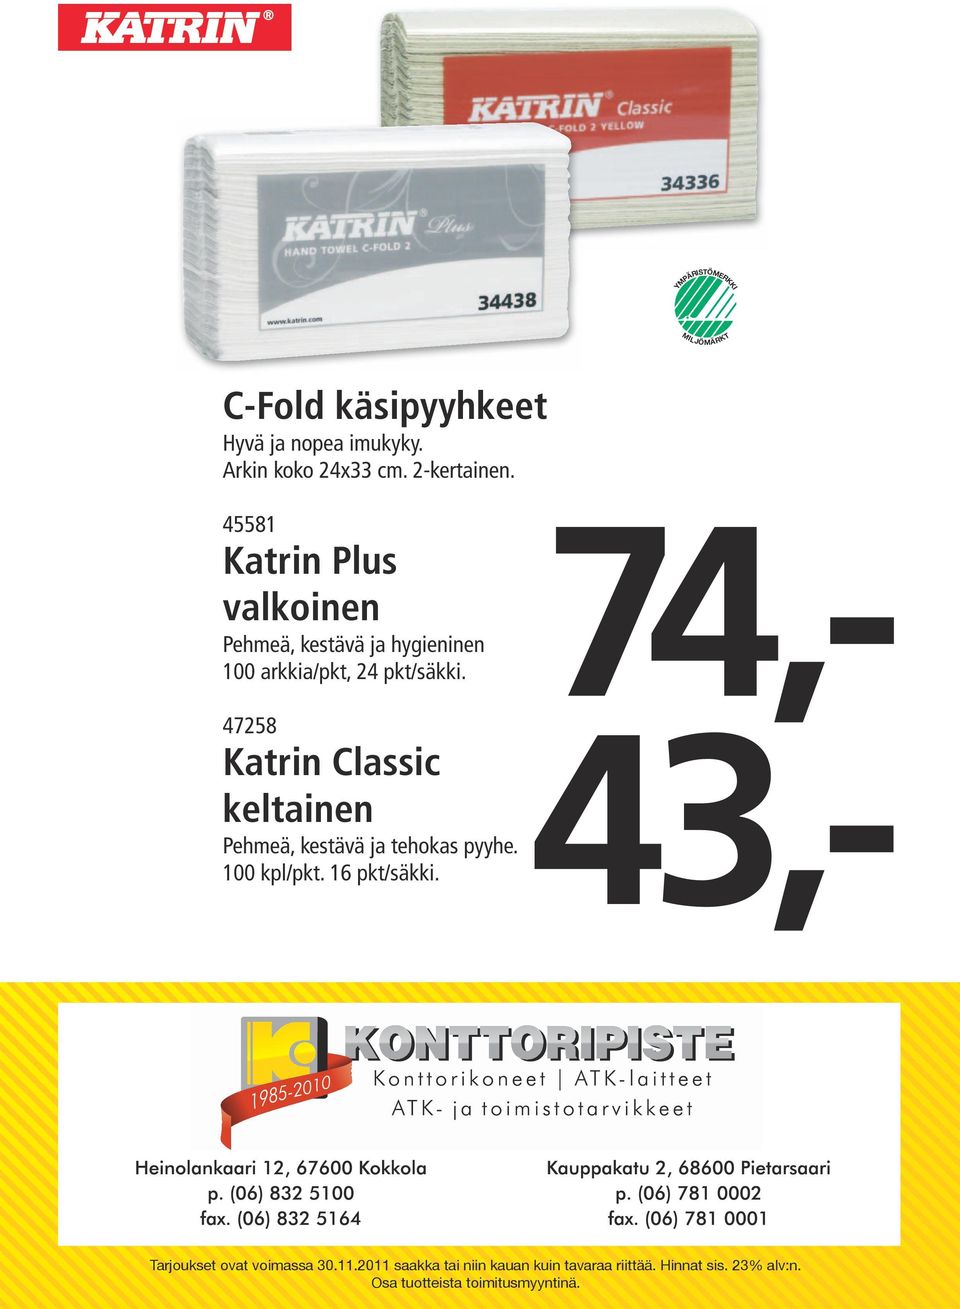 45581 Katrin Plus valkoinen Pehmeä, kestävä ja hygieninen 100 arkkia/pkt,